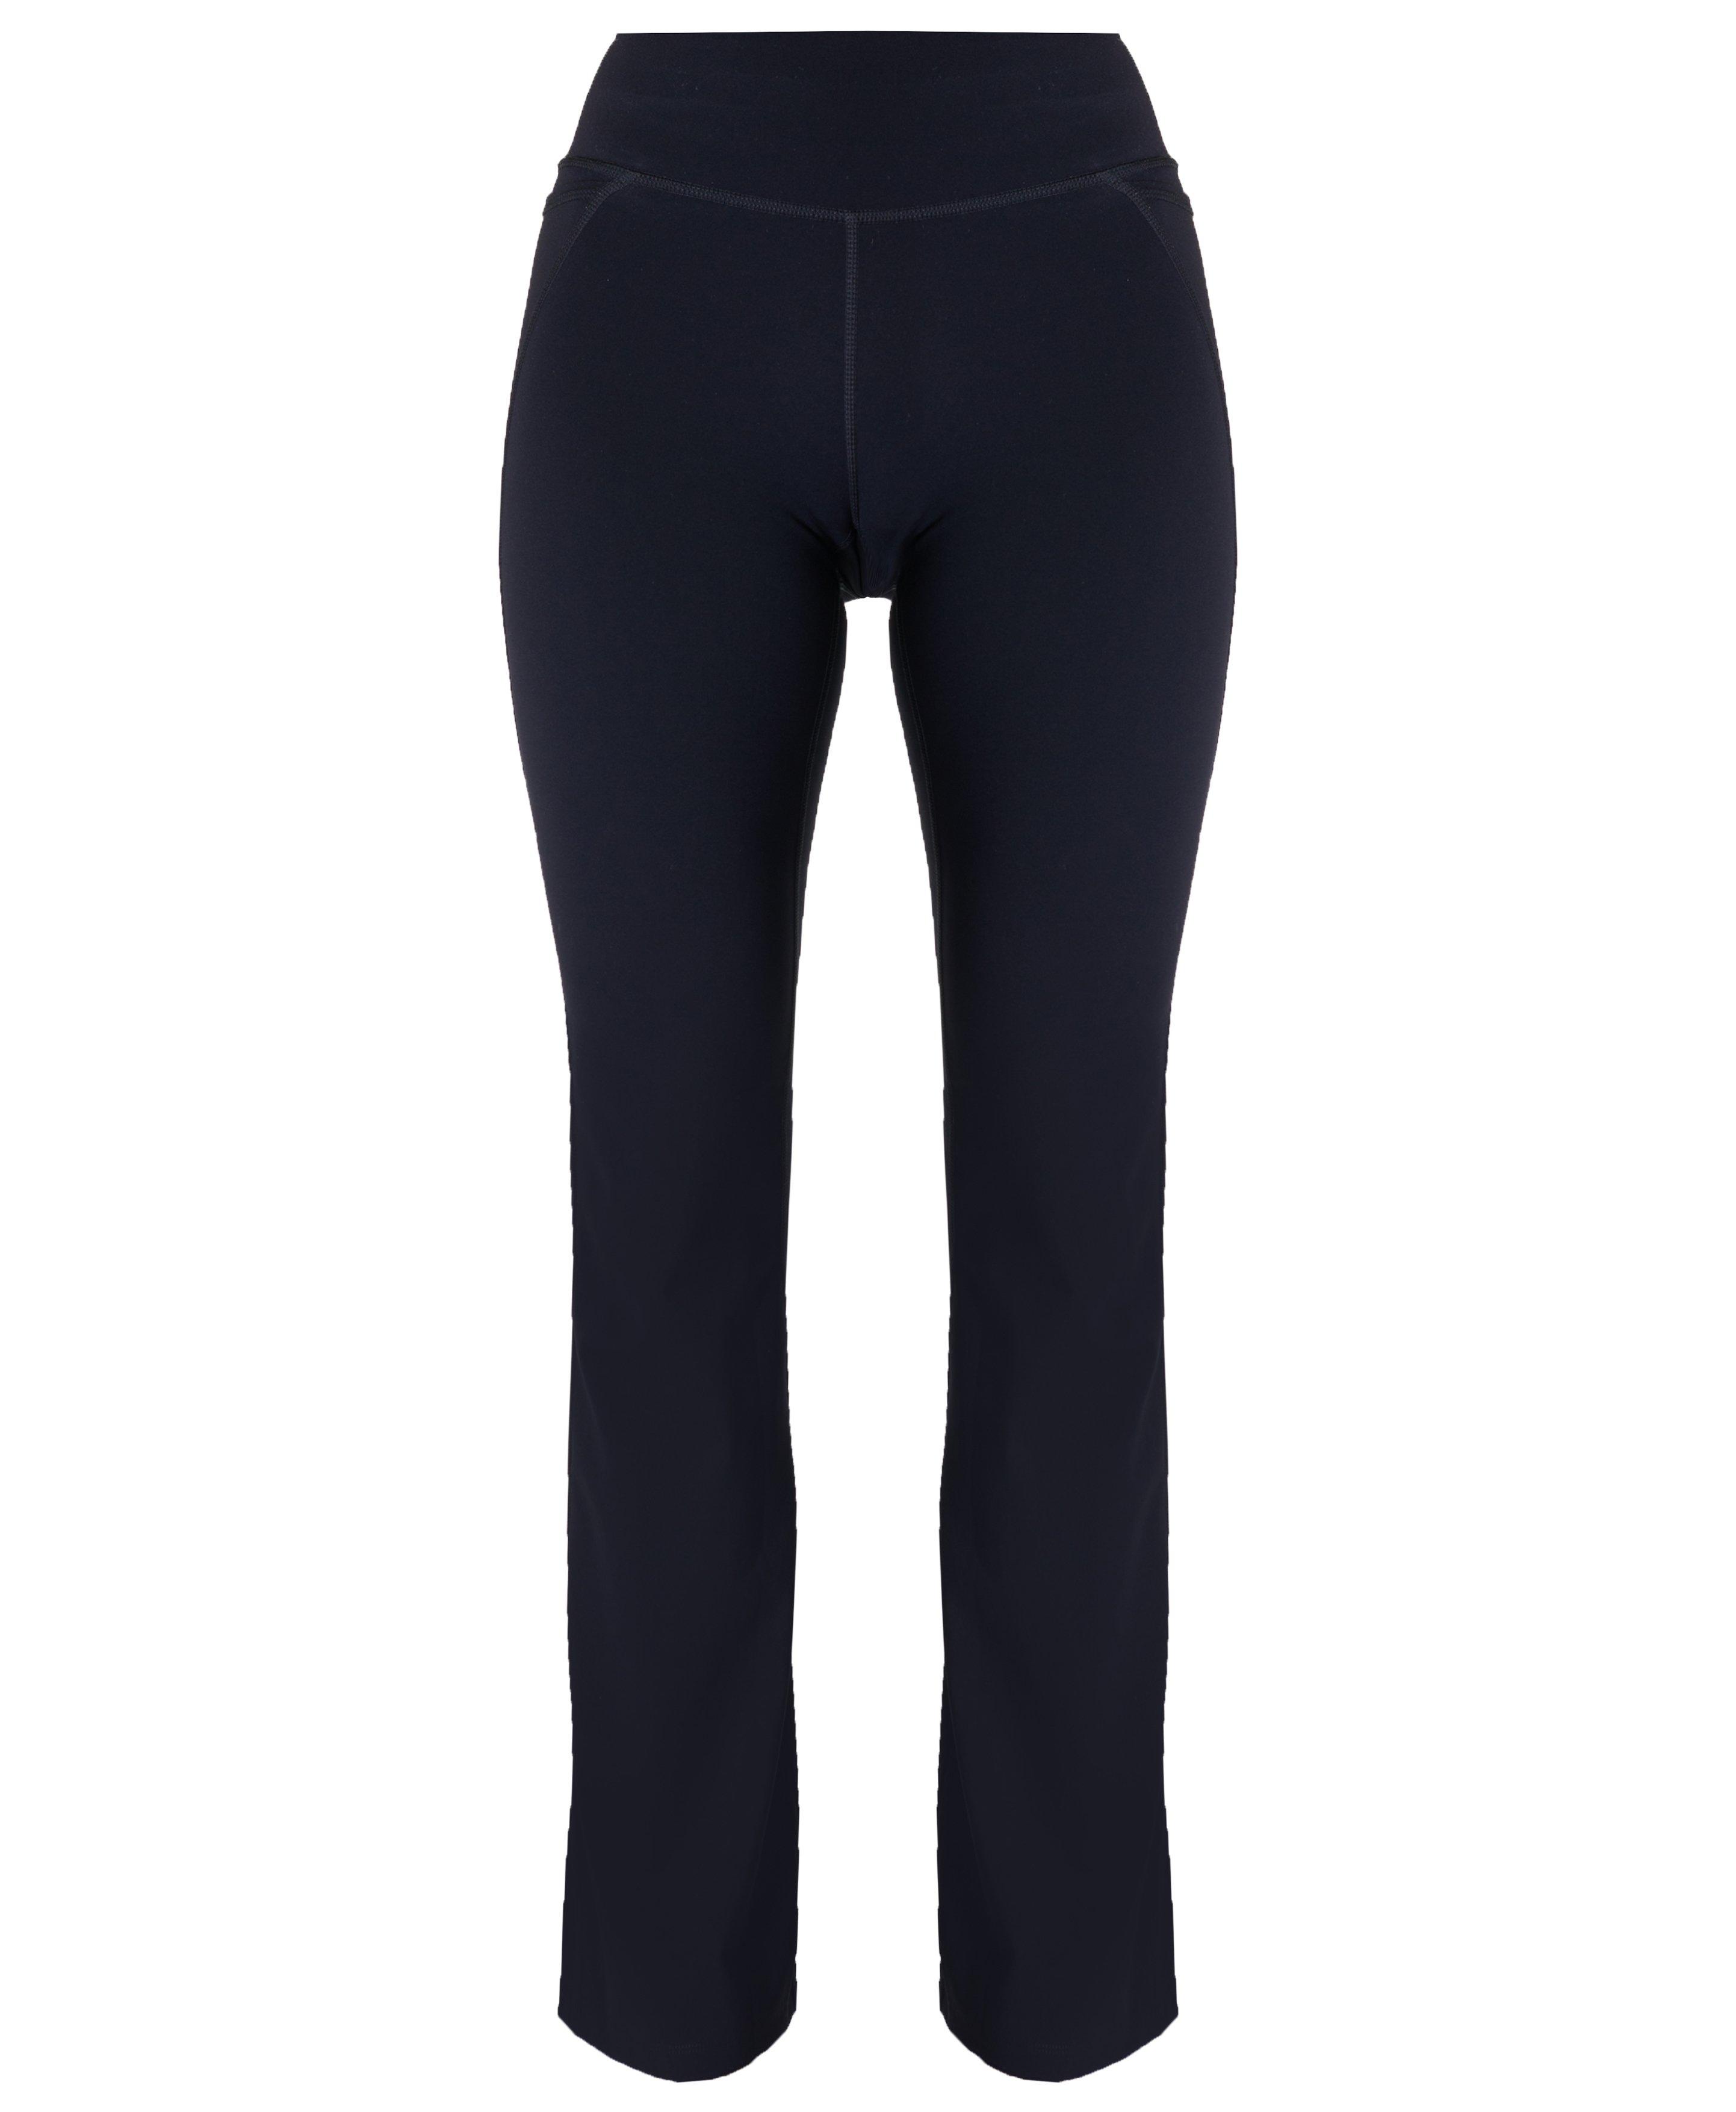 Power Bootcut Gym Trousers - Black, Women's Trousers & Yoga Pants